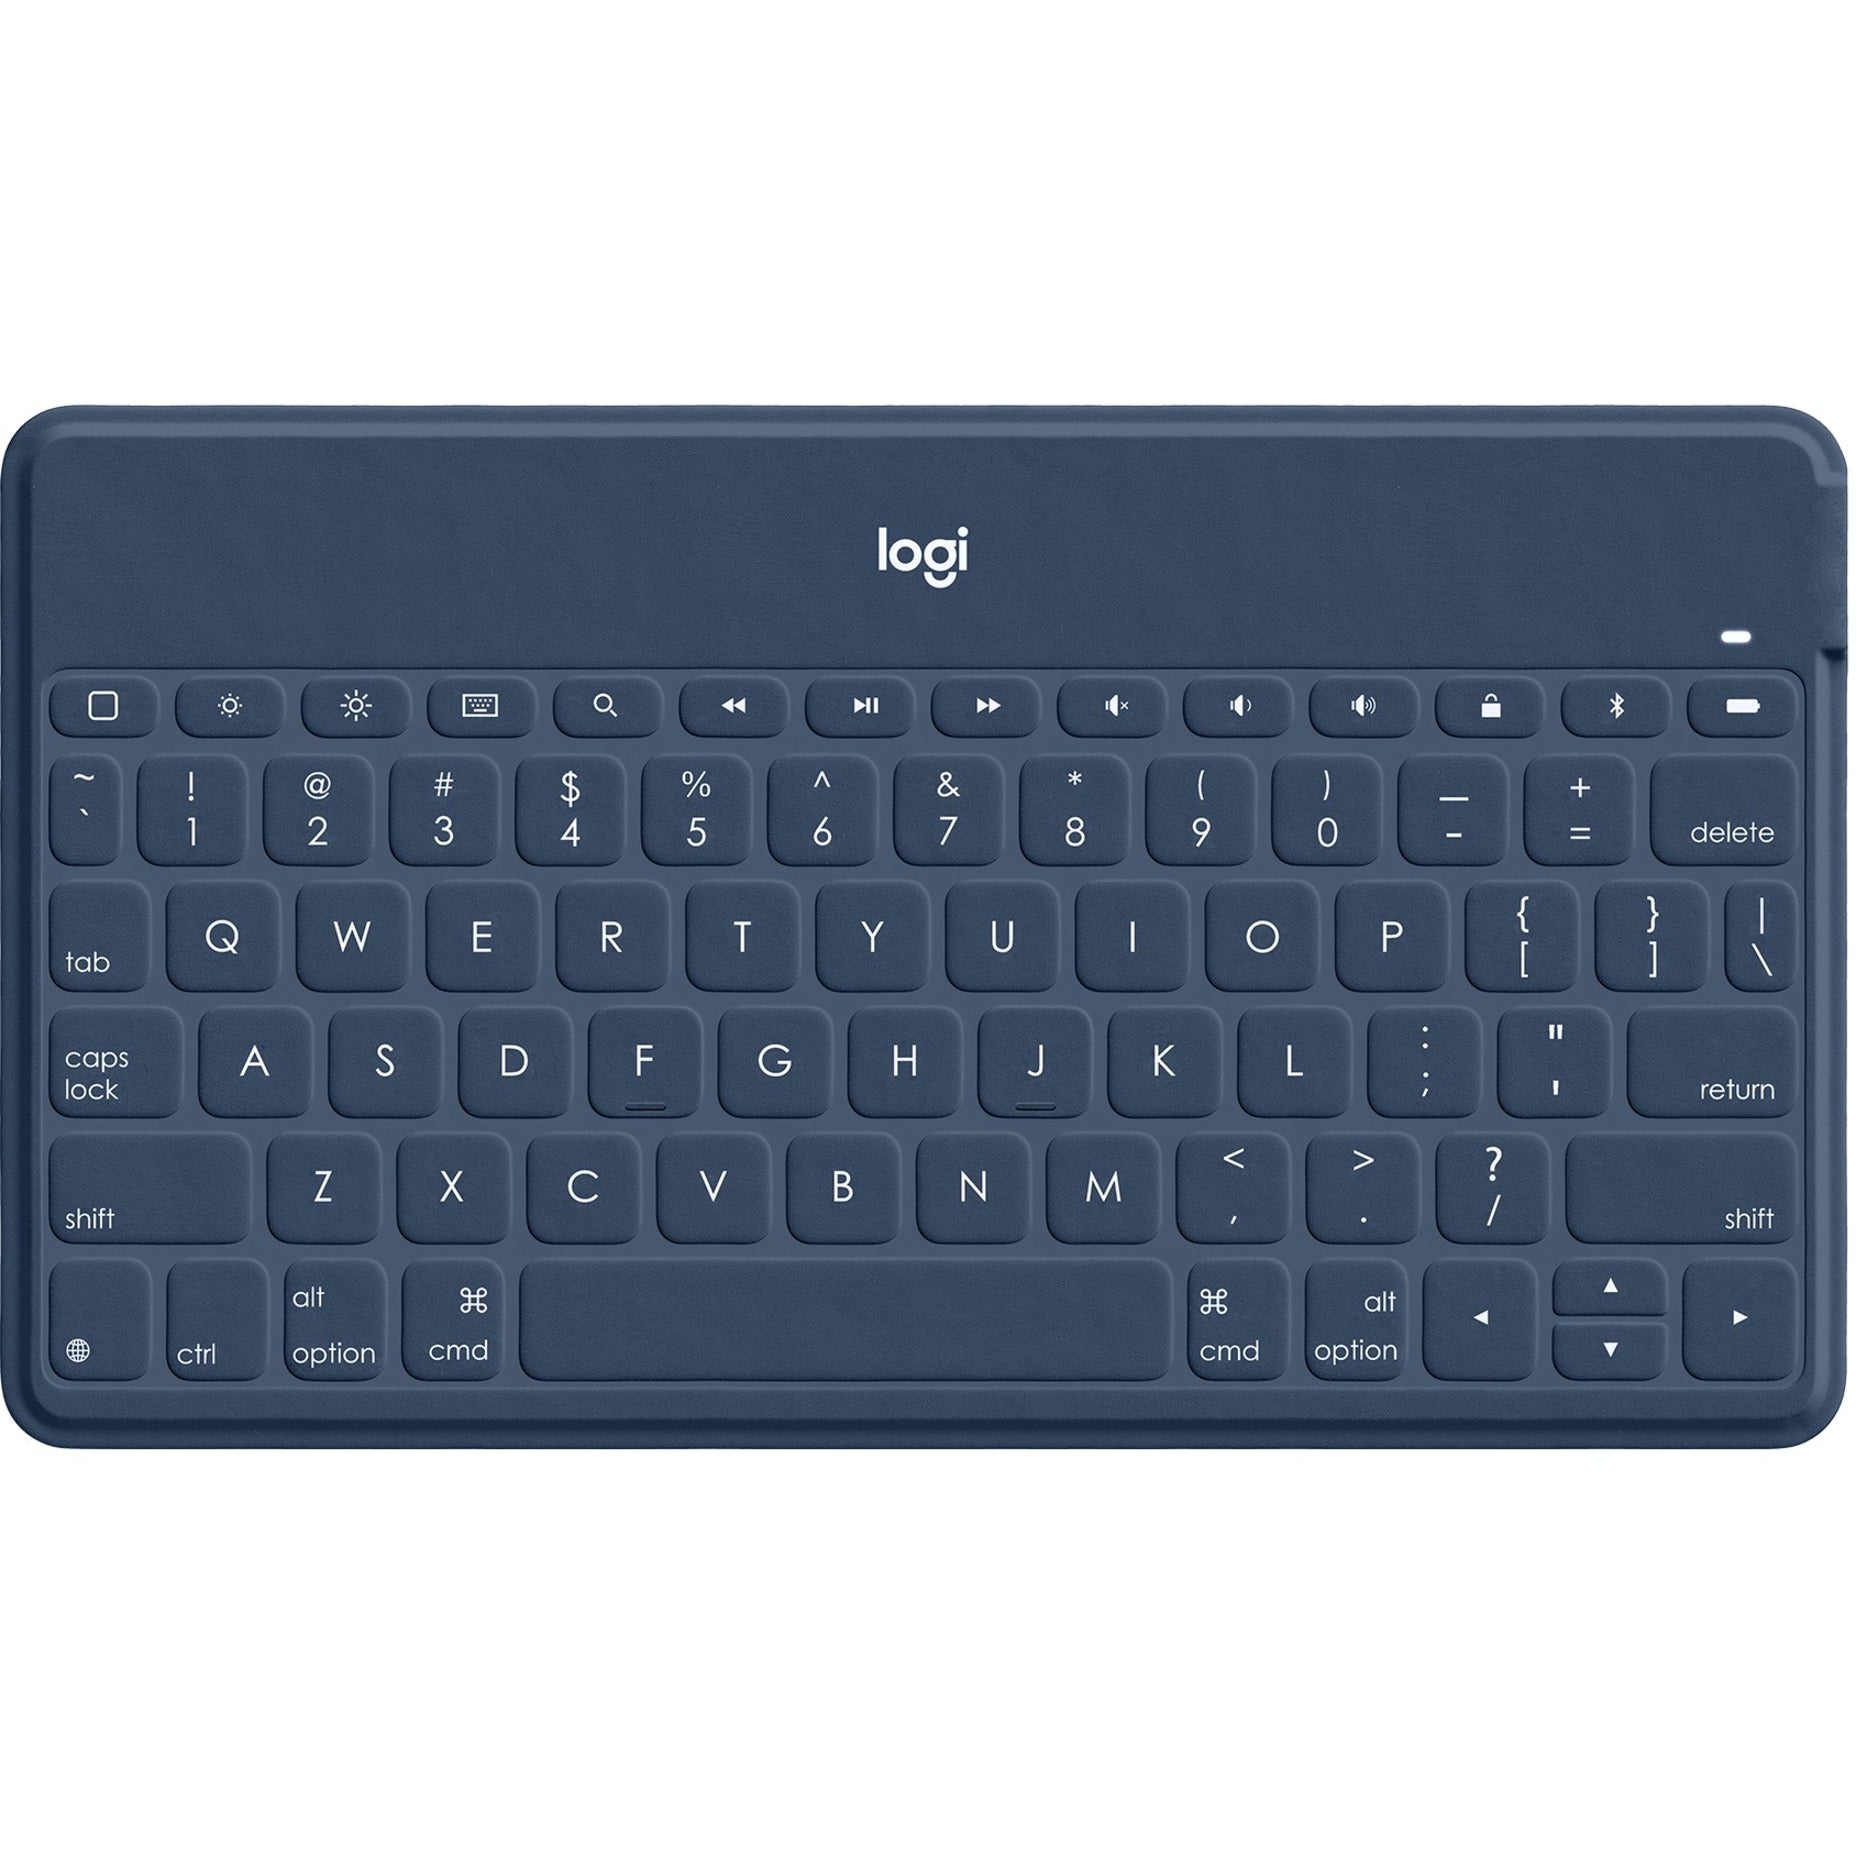 Logitech 920-010040 Keys-To-Go Keyboard, Bluetooth Wireless, Spill Proof, Rechargeable Battery, Slim, Blue